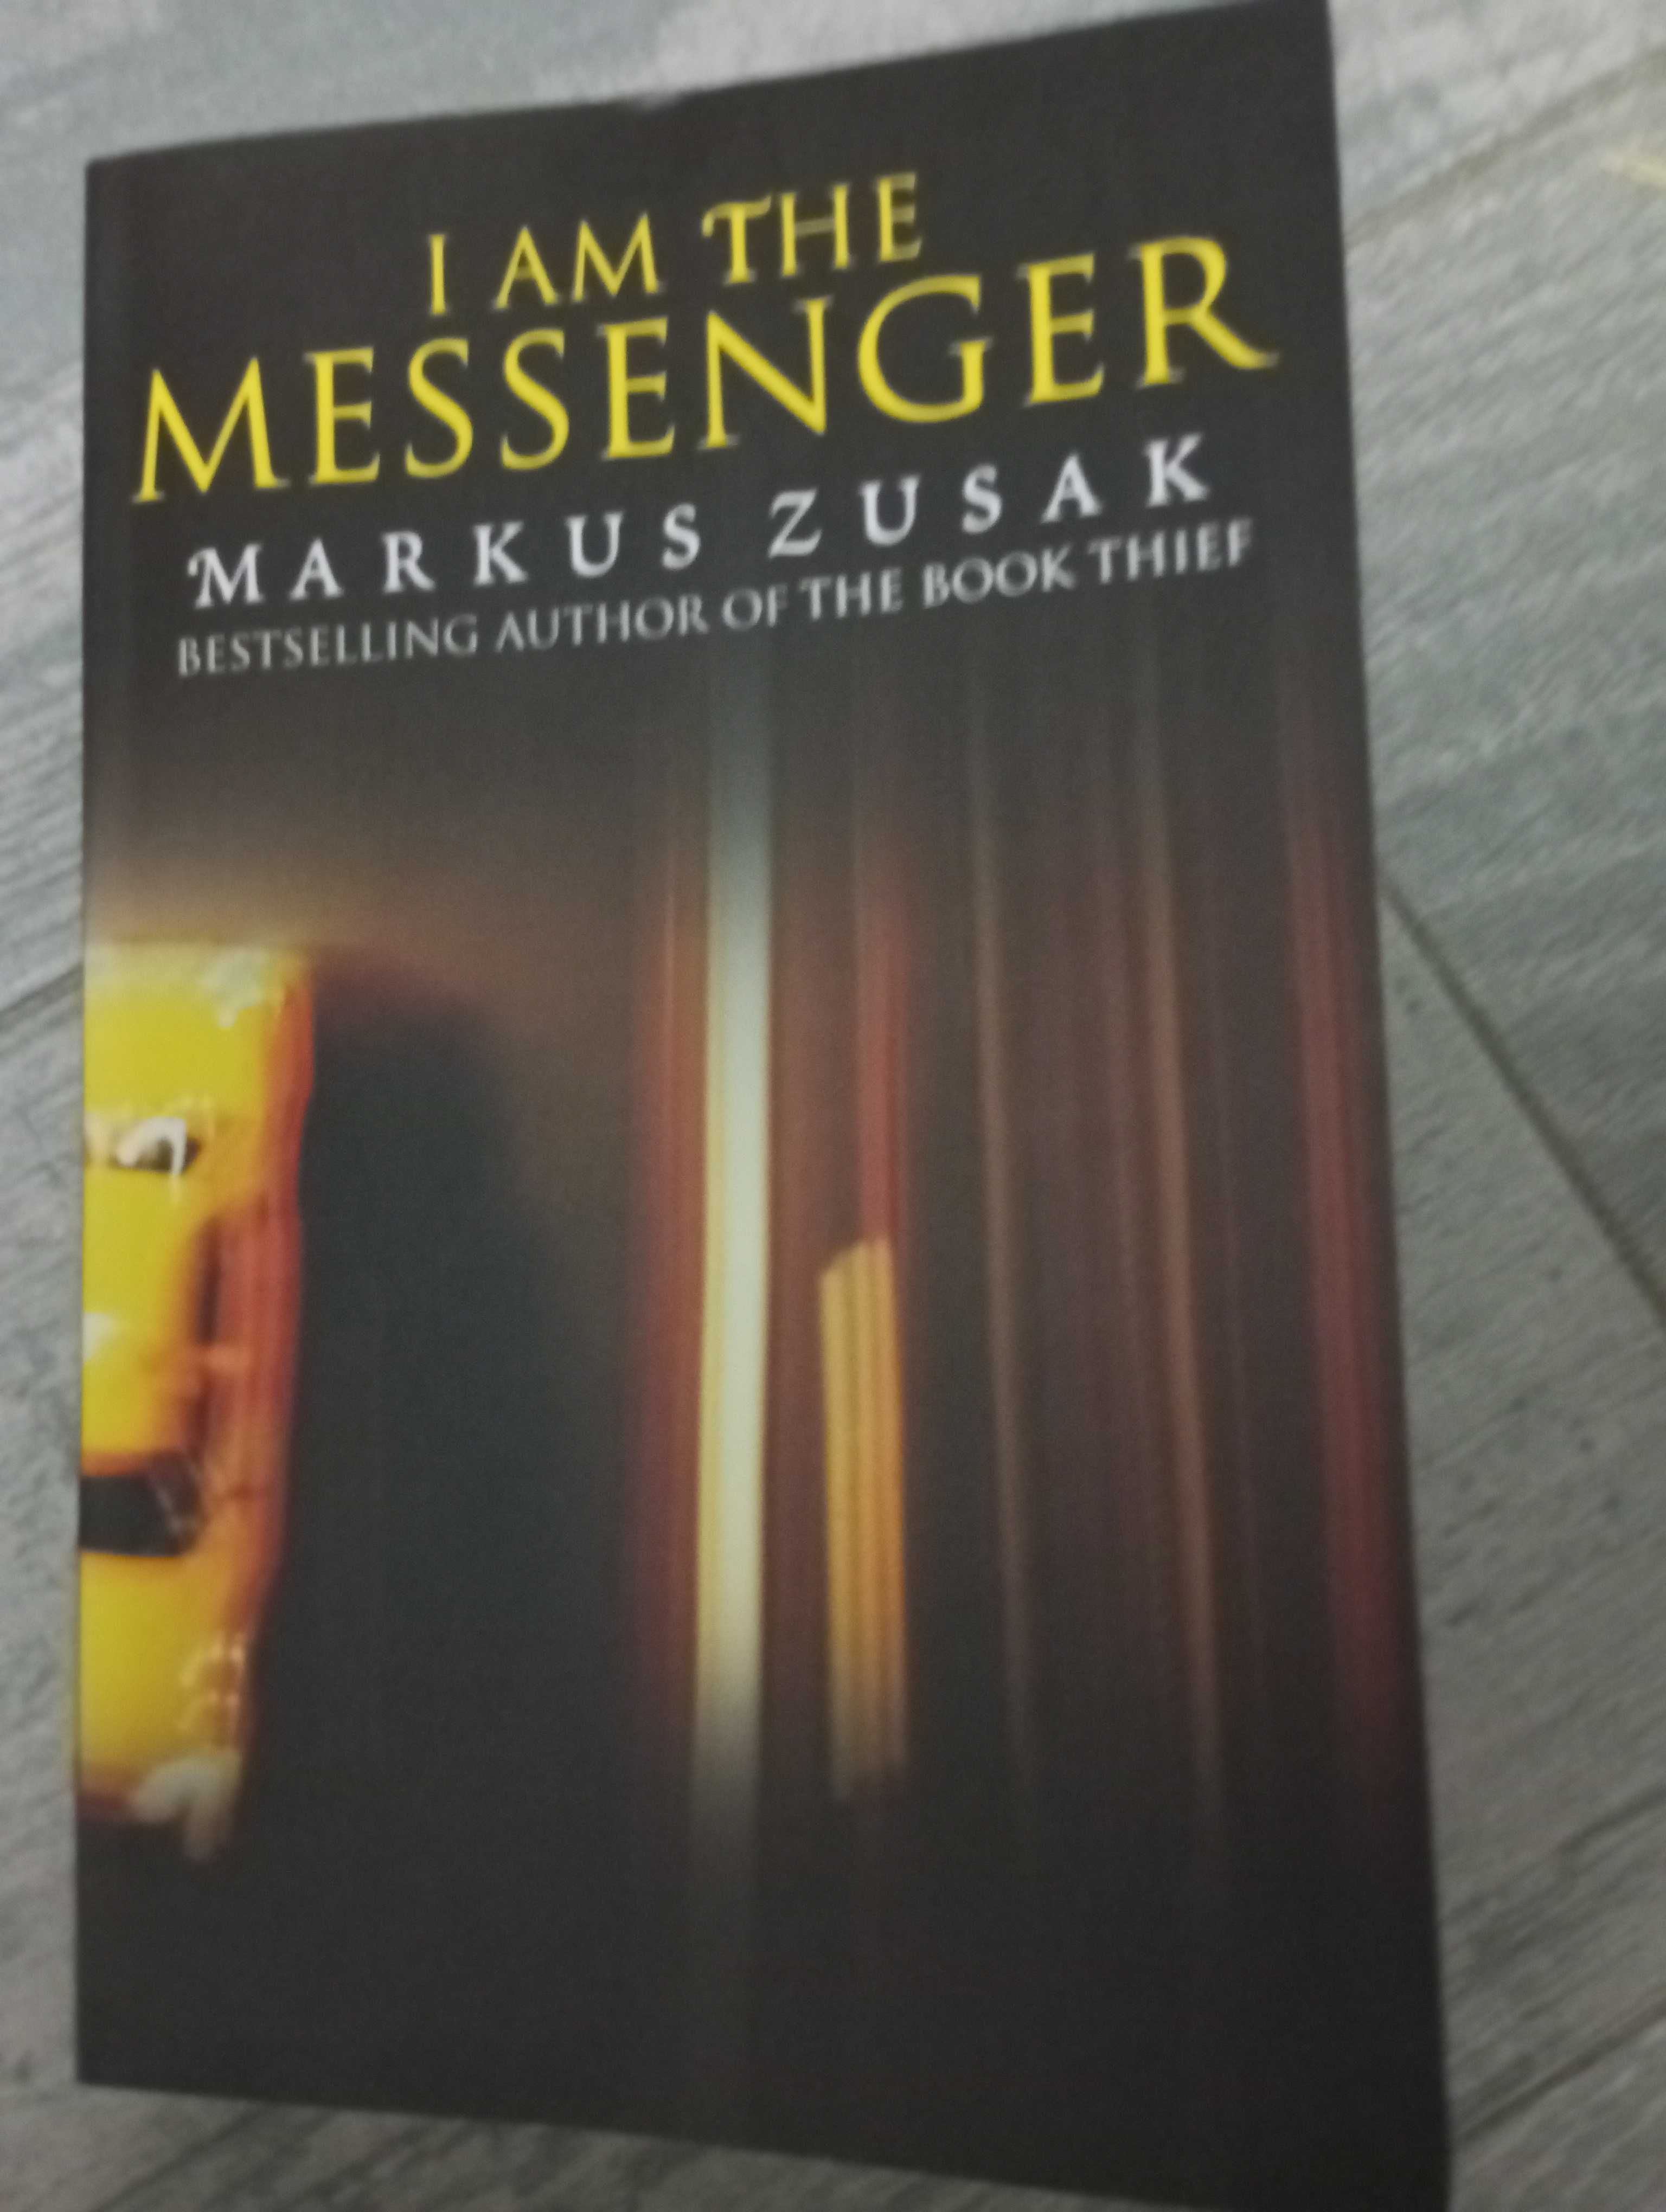 Livro I am the messenger, de Markus Zusak